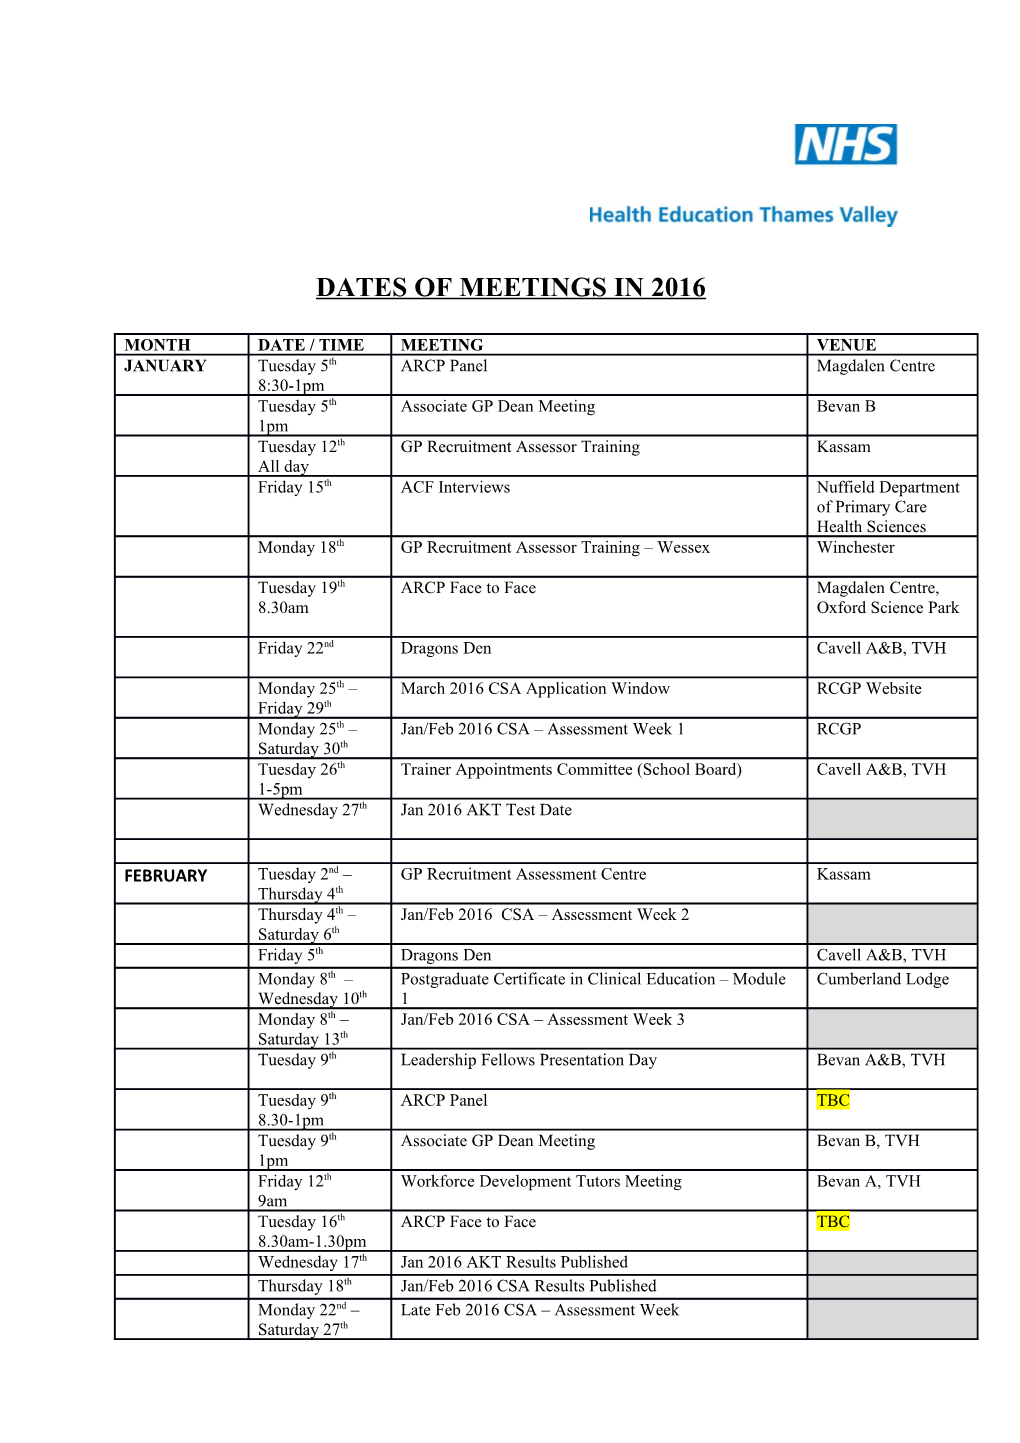 Dates of Meetings in 2016